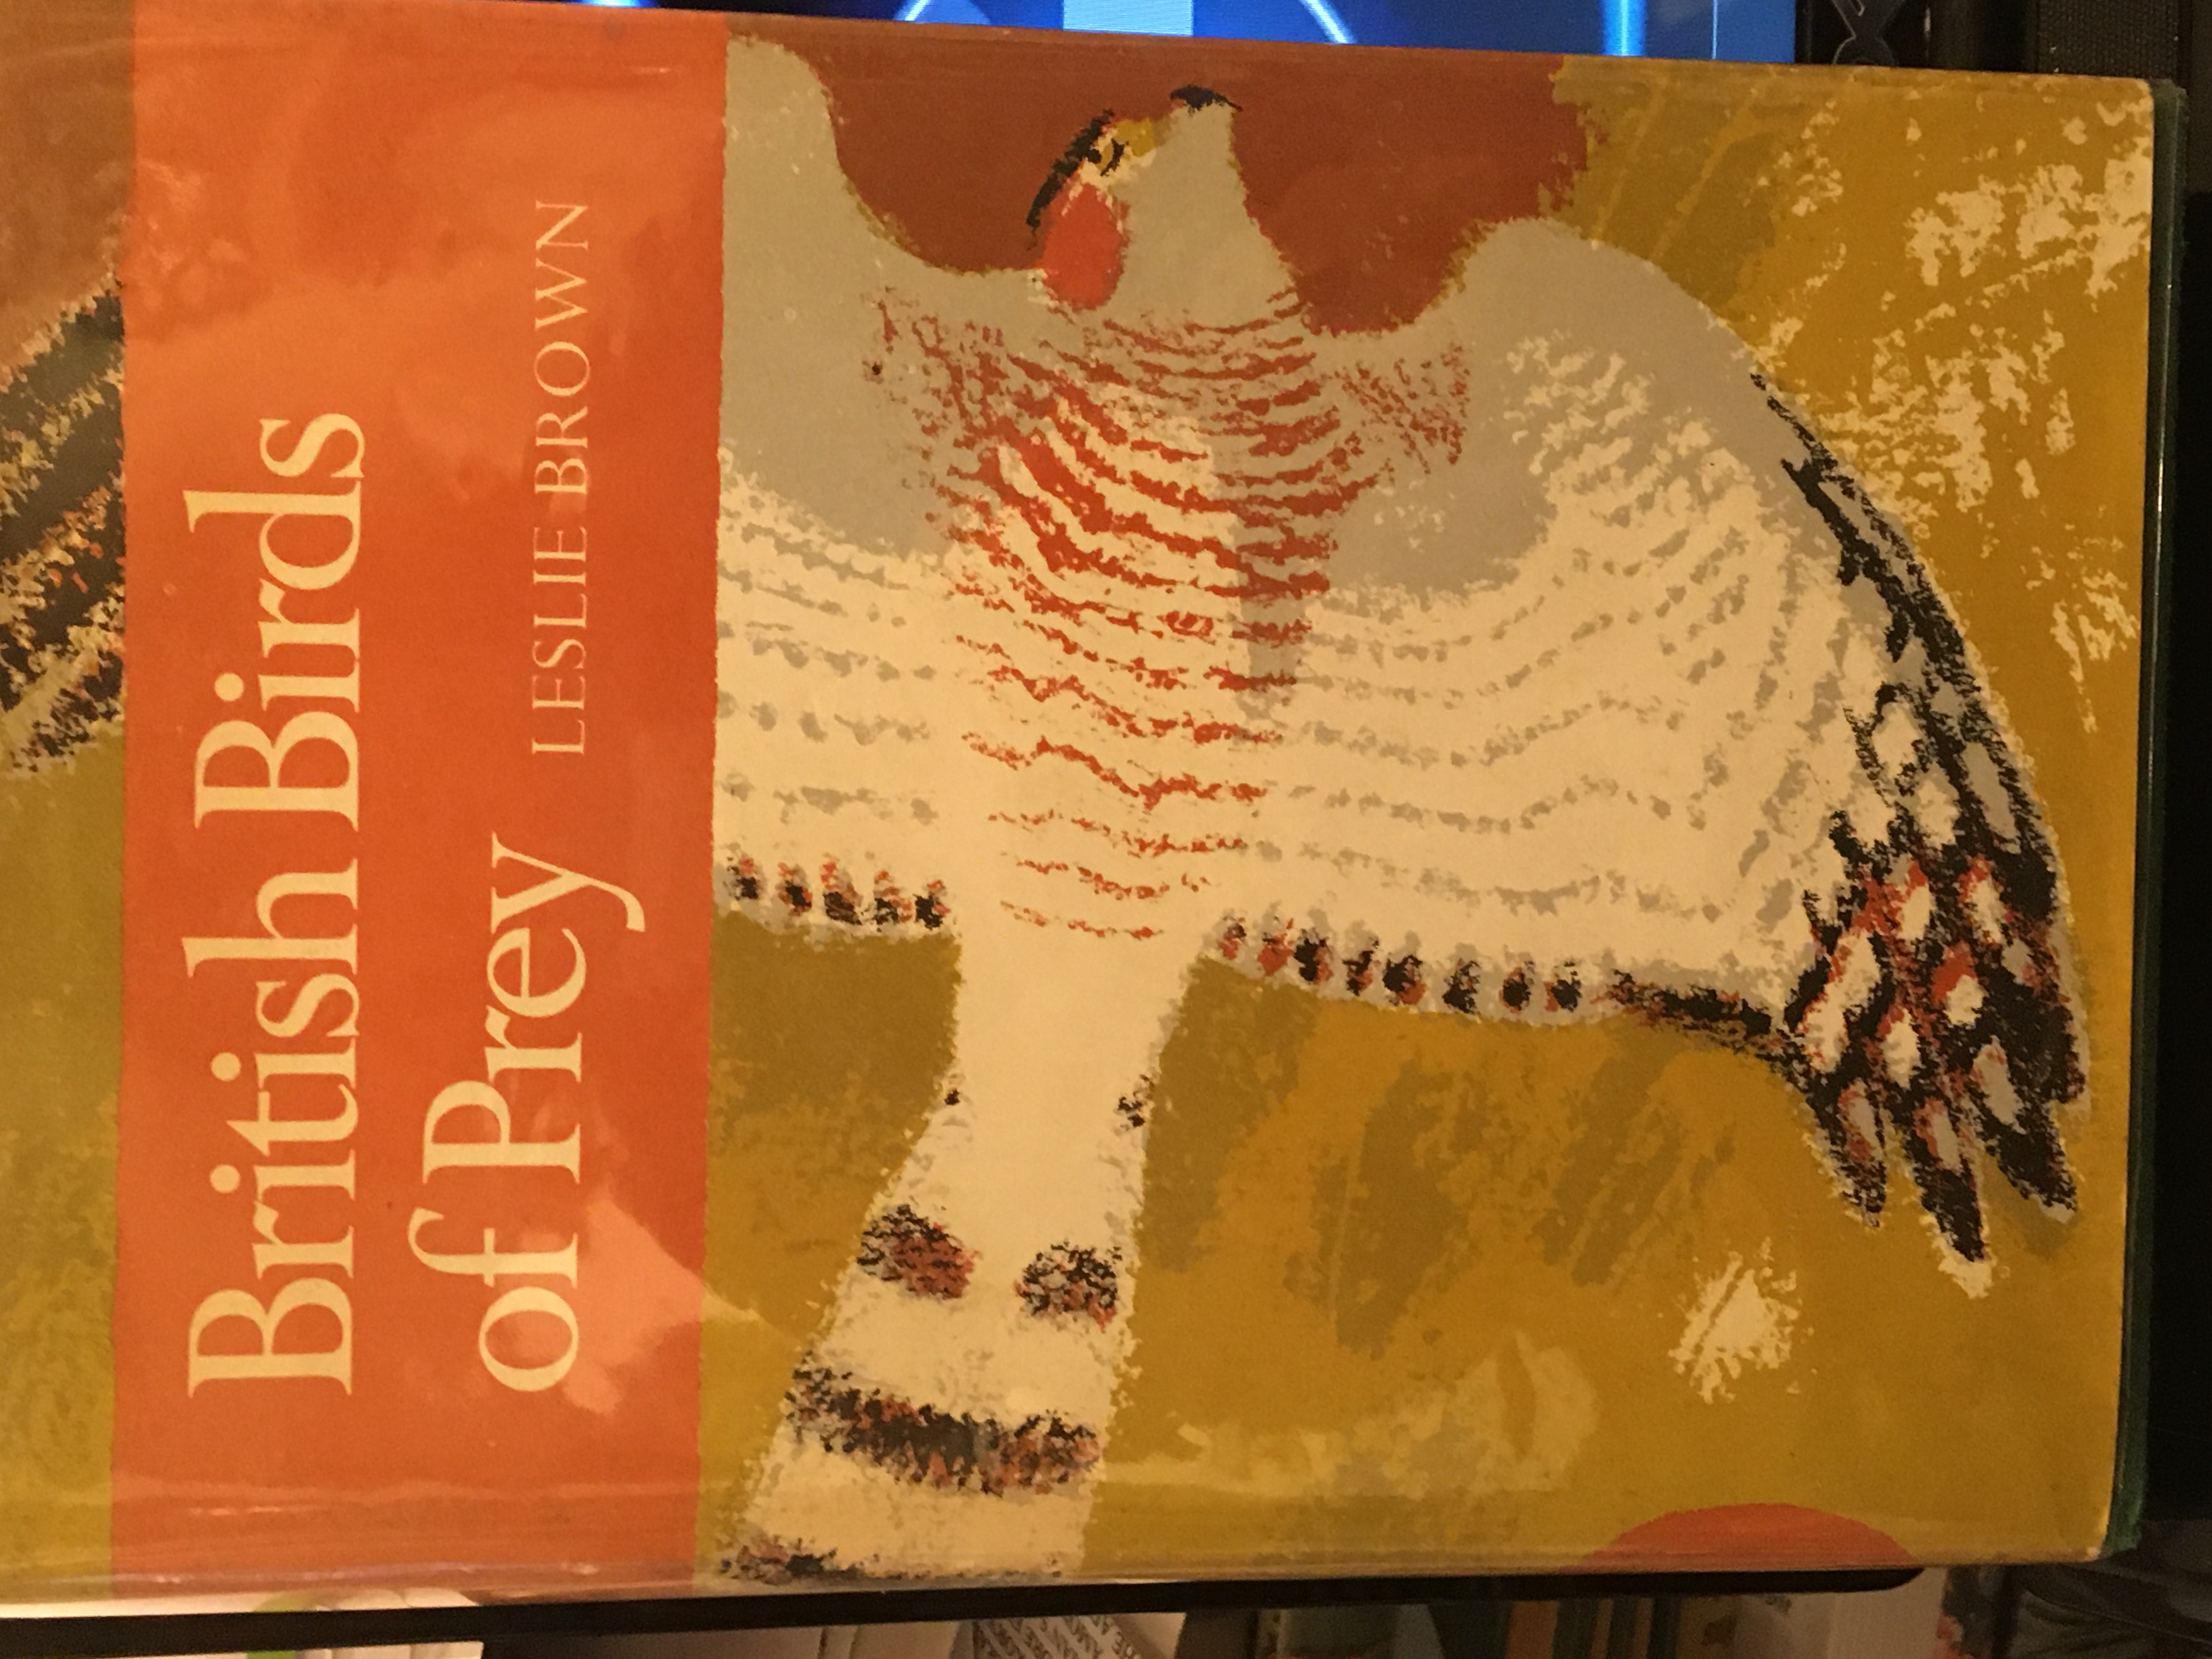 birds of prey book